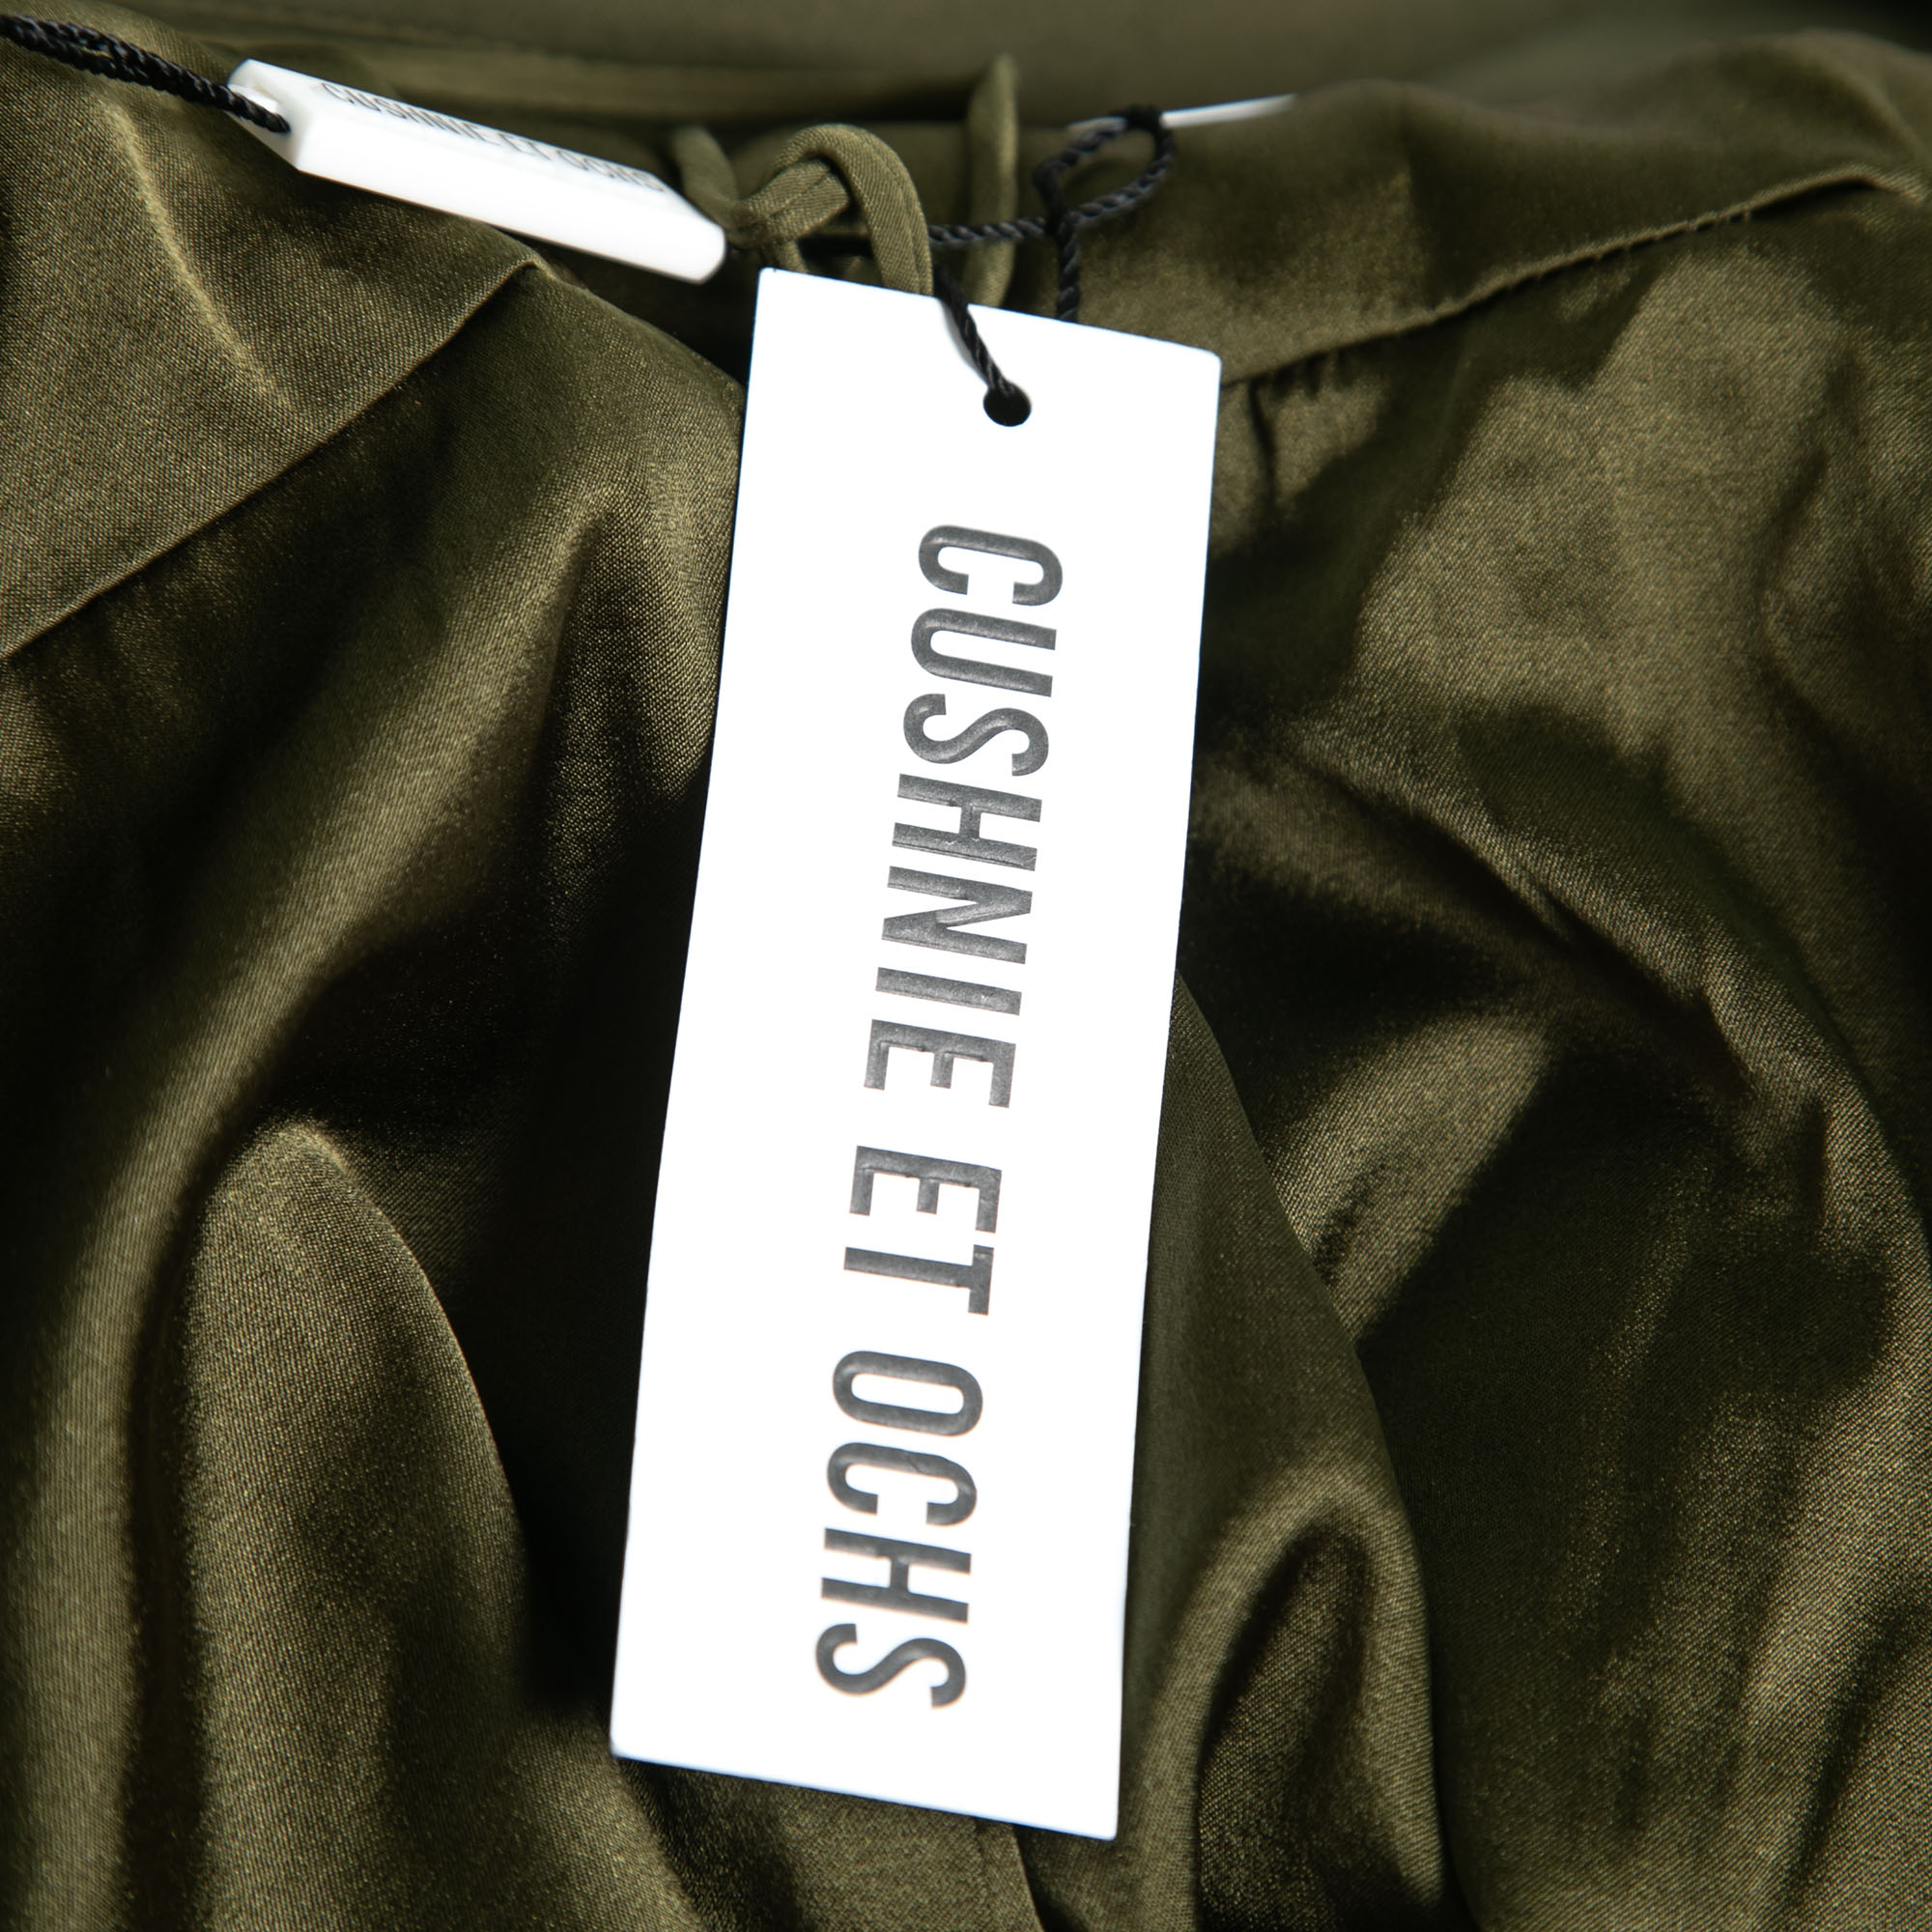 Cushnie Et Ochs Safari Green Stretch Cotton Keyhole Detail Mini Dress XS